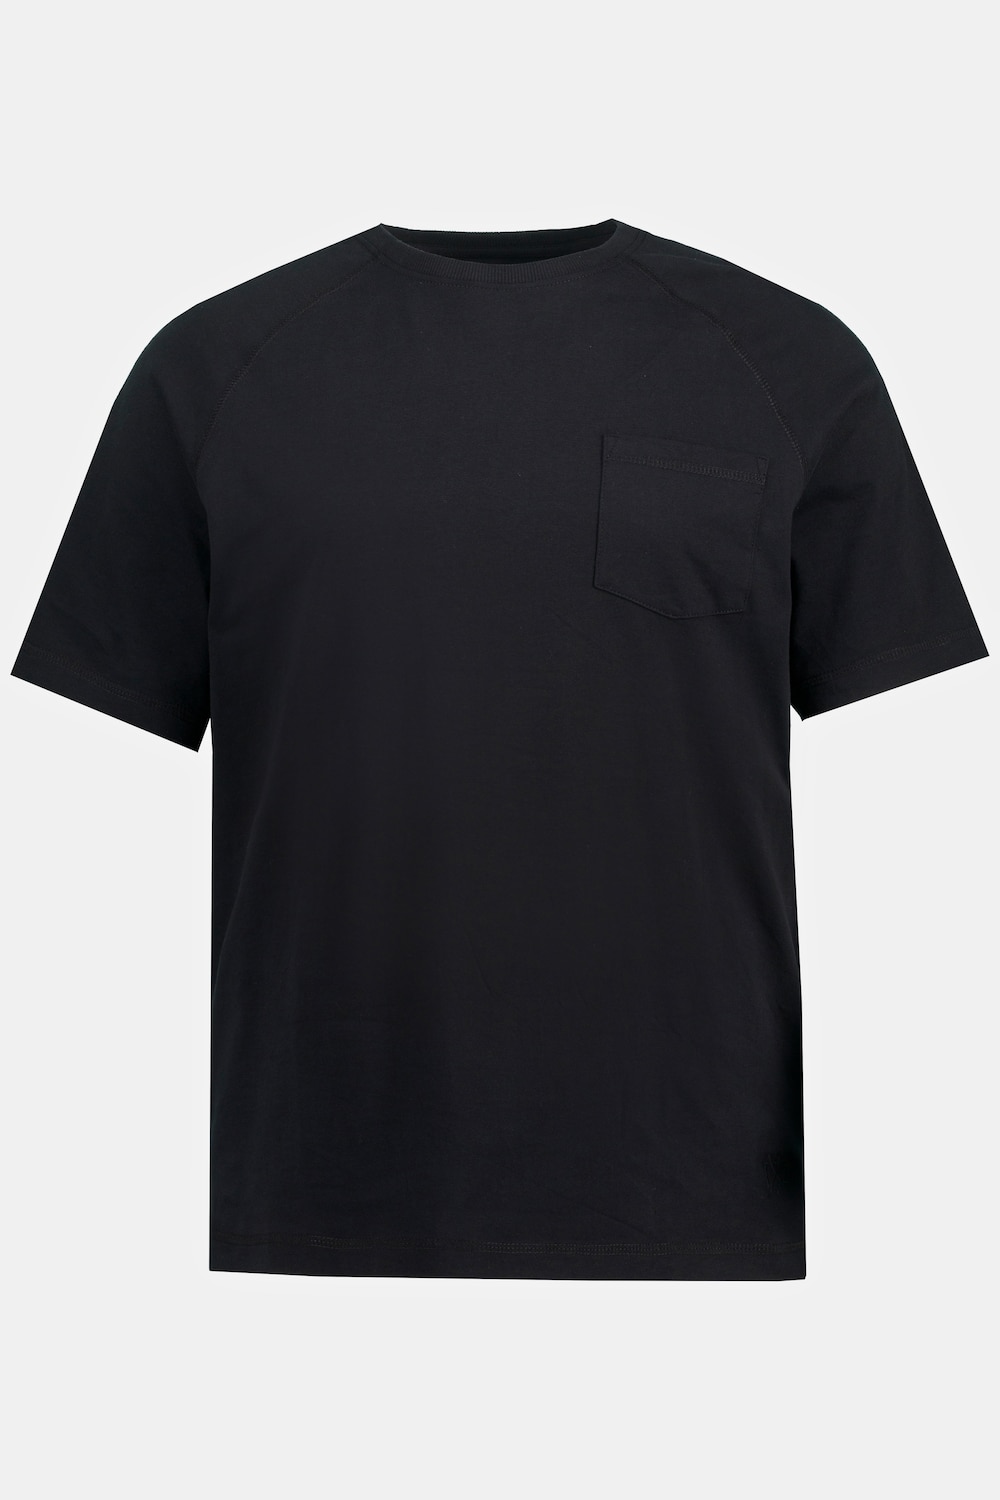 T-Shirt, Große Größen, Herren, schwarz, Größe: L, Baumwolle, JP1880